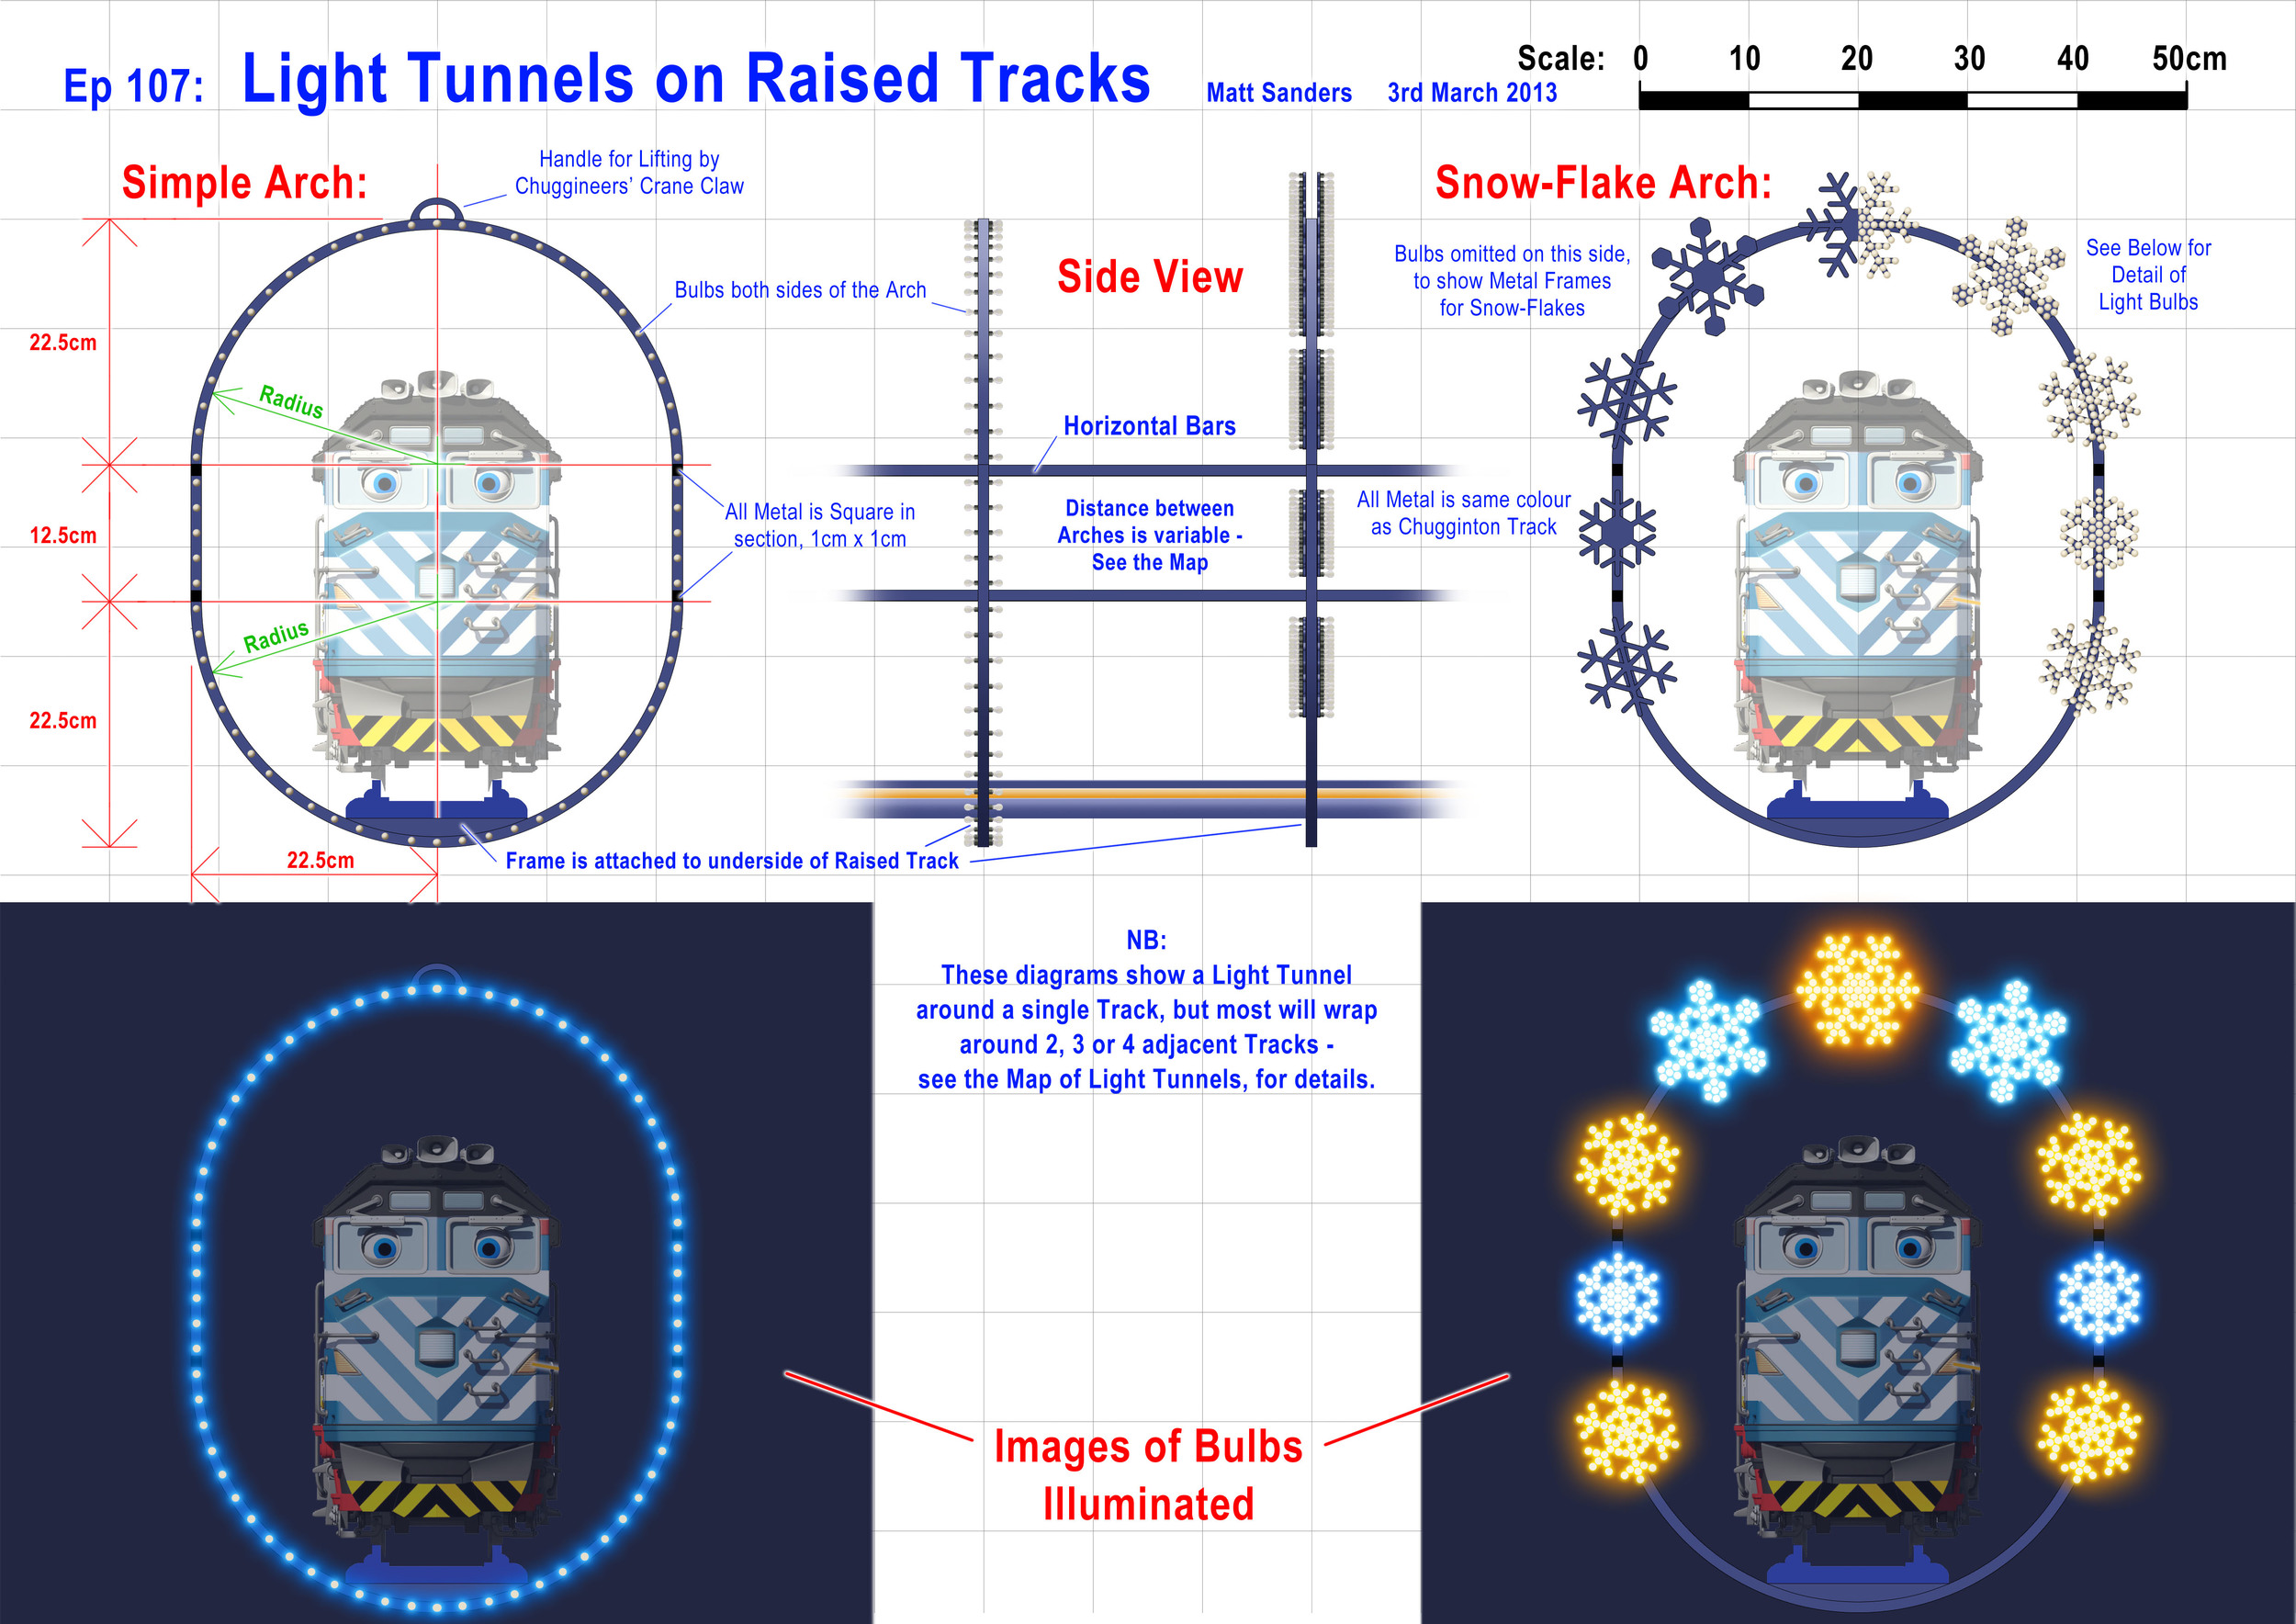 Ep107_Light_Tunnels_on_Raised_Tracks.jpg